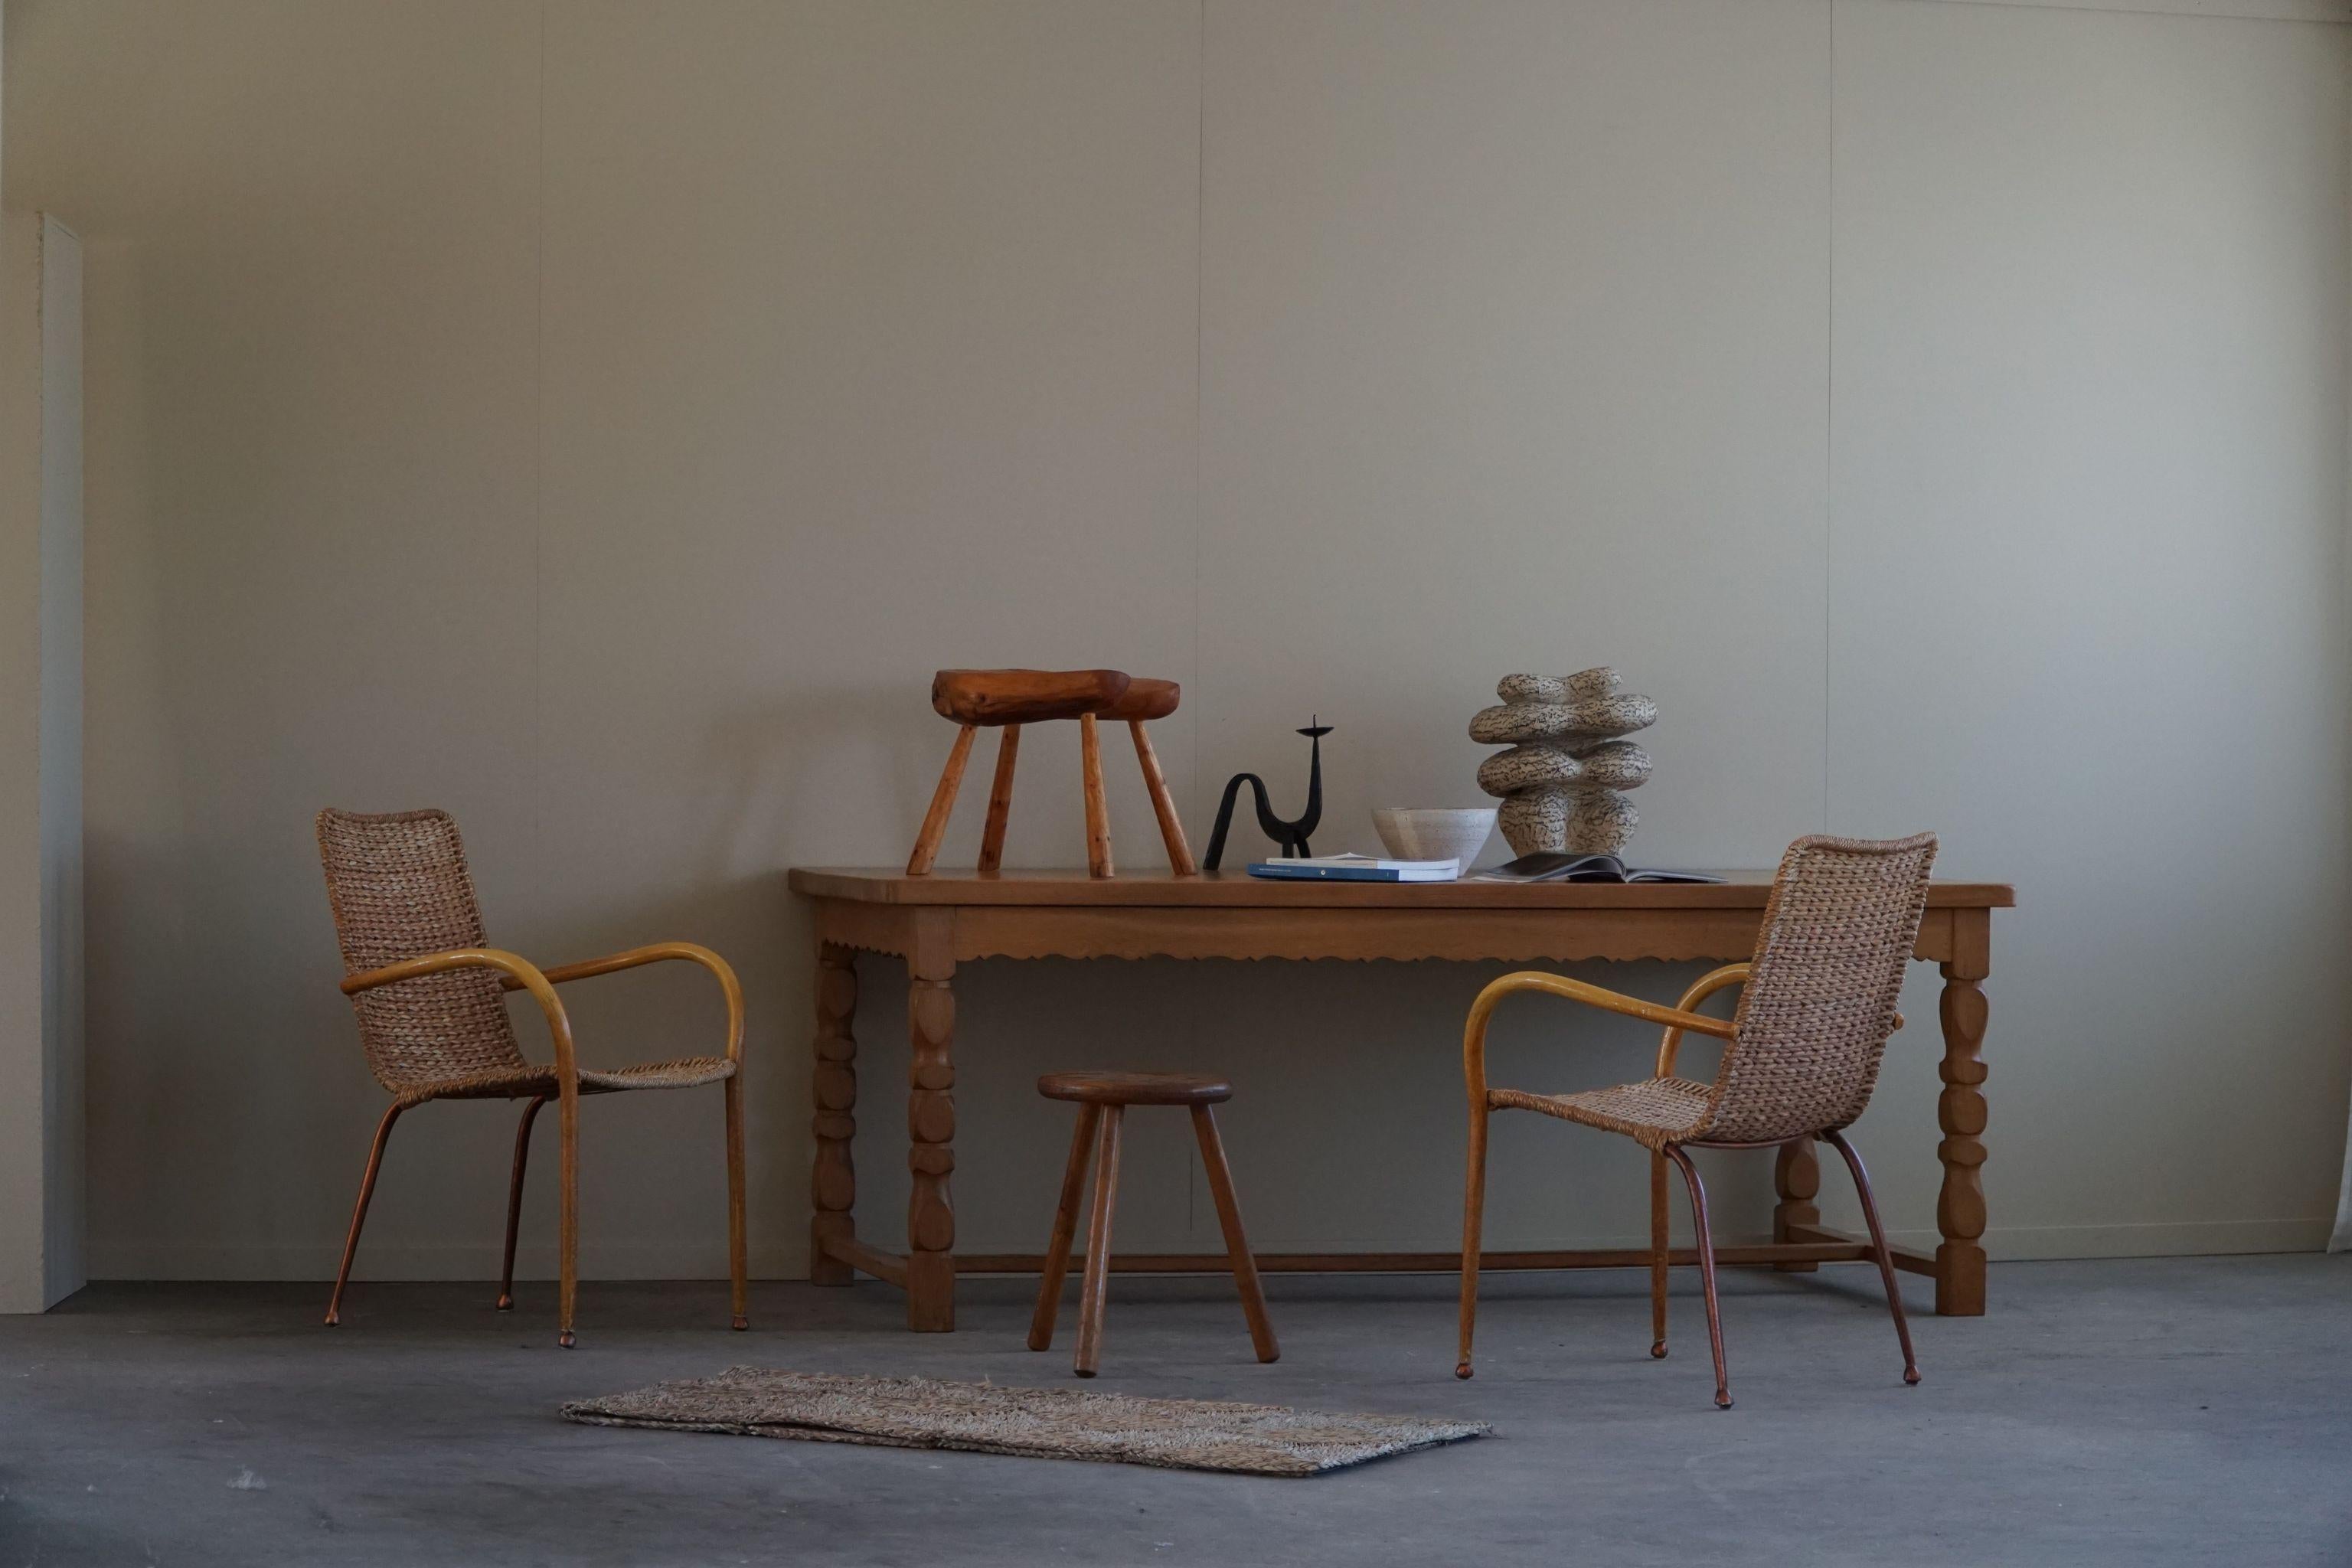 Voici un grand bureau rectangulaire / table à manger en chêne massif, fabriqué par un ébéniste danois dans les années 1950. Cette pièce exceptionnelle combine l'élégance du design danois avec les détails ornés de l'esthétique baroque, ce qui donne